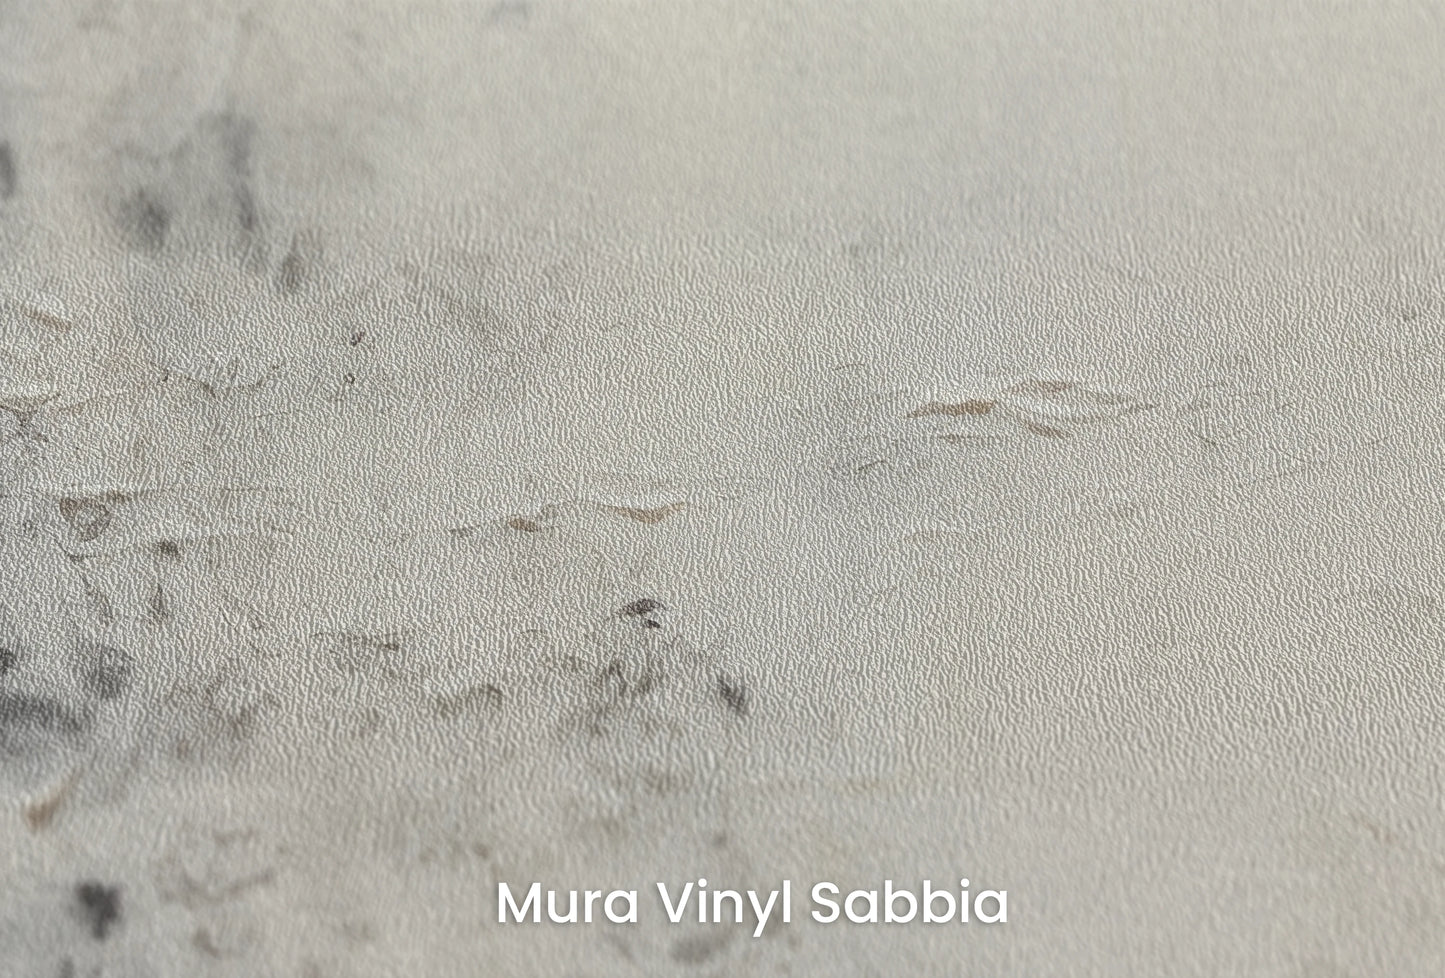 Zbliżenie na artystyczną fototapetę o nazwie Jupiter's Watch na podłożu Mura Vinyl Sabbia struktura grubego ziarna piasku.